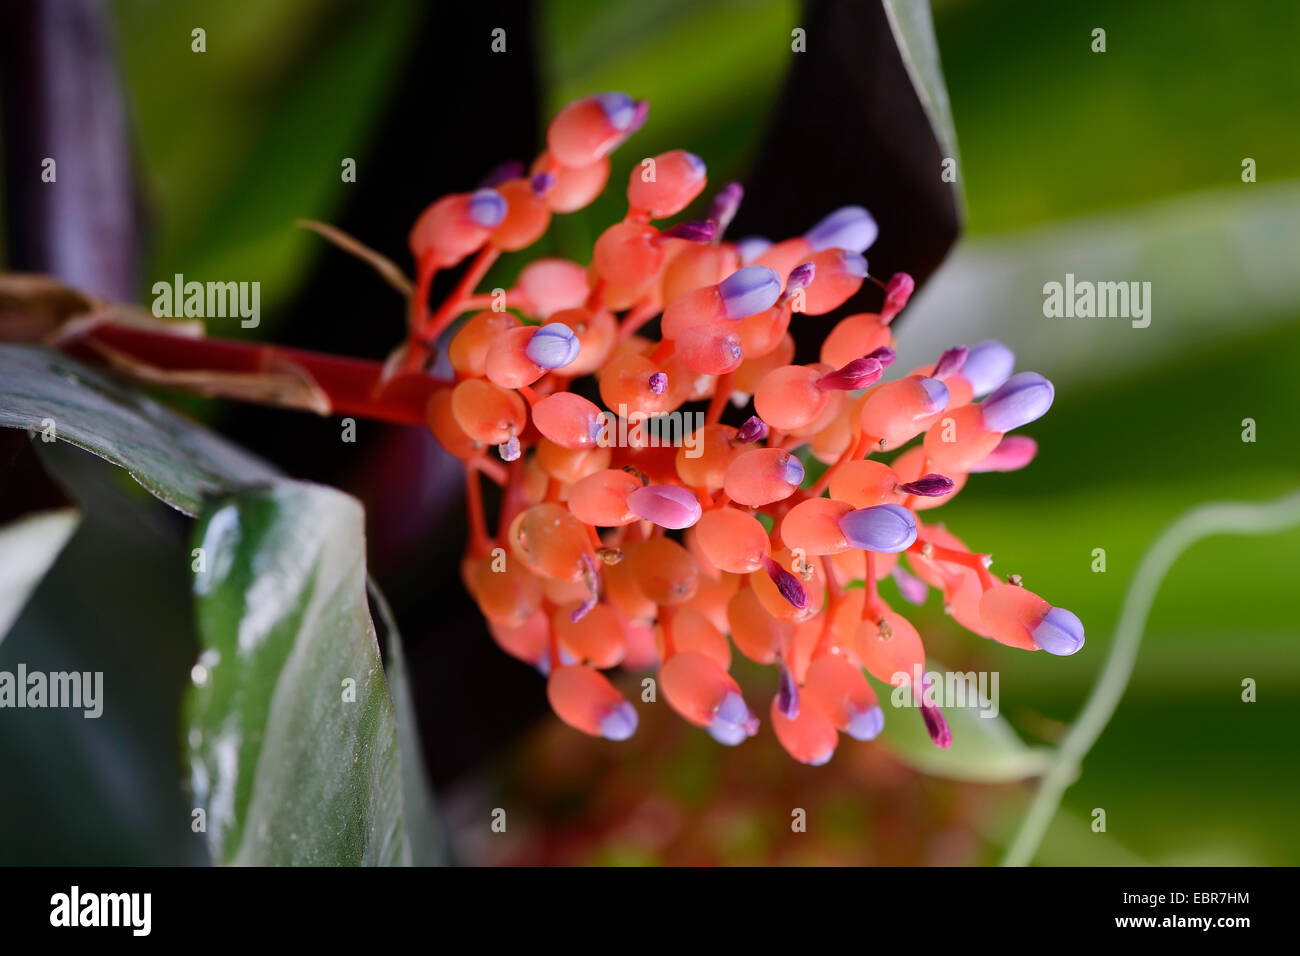 Aechmea miniata (Aechmea miniata), inflorescence Stock Photo